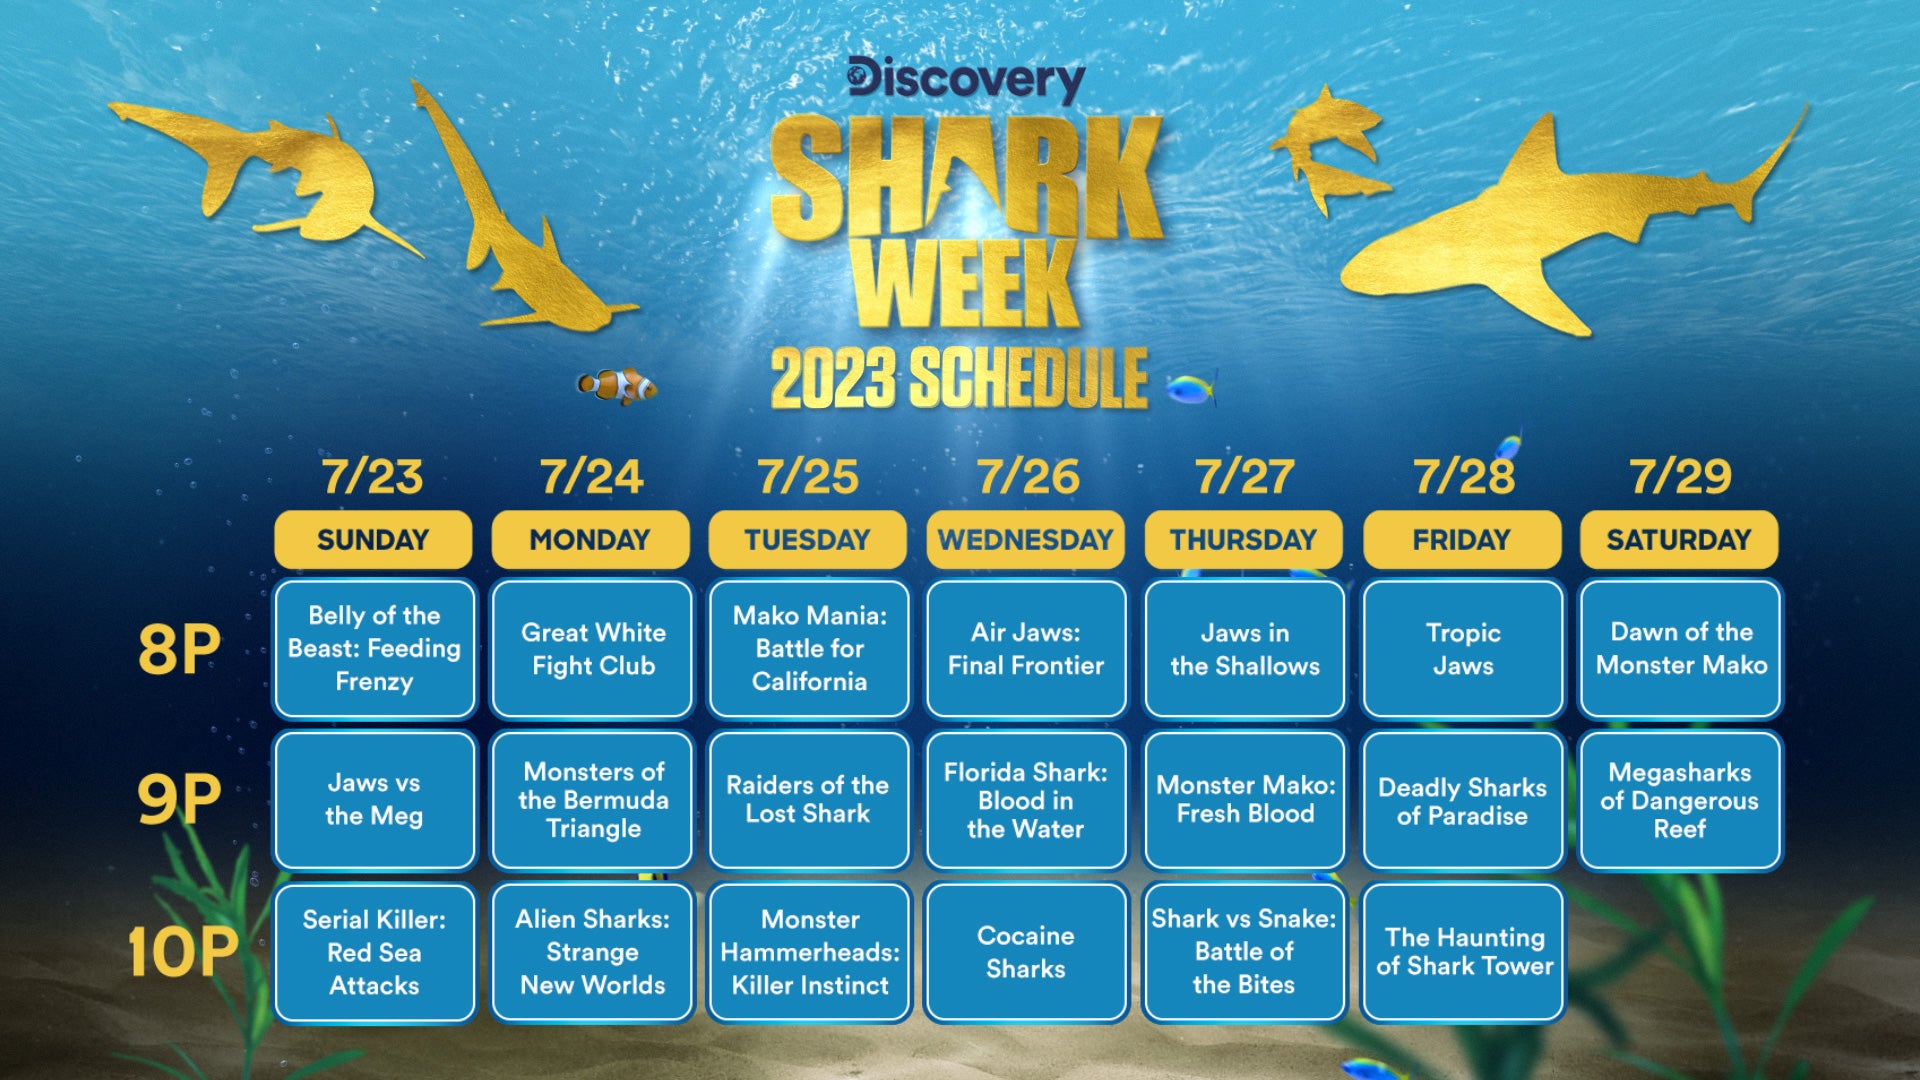 Un calendario completo para la Shark Week 2023 de Discovery Channel.